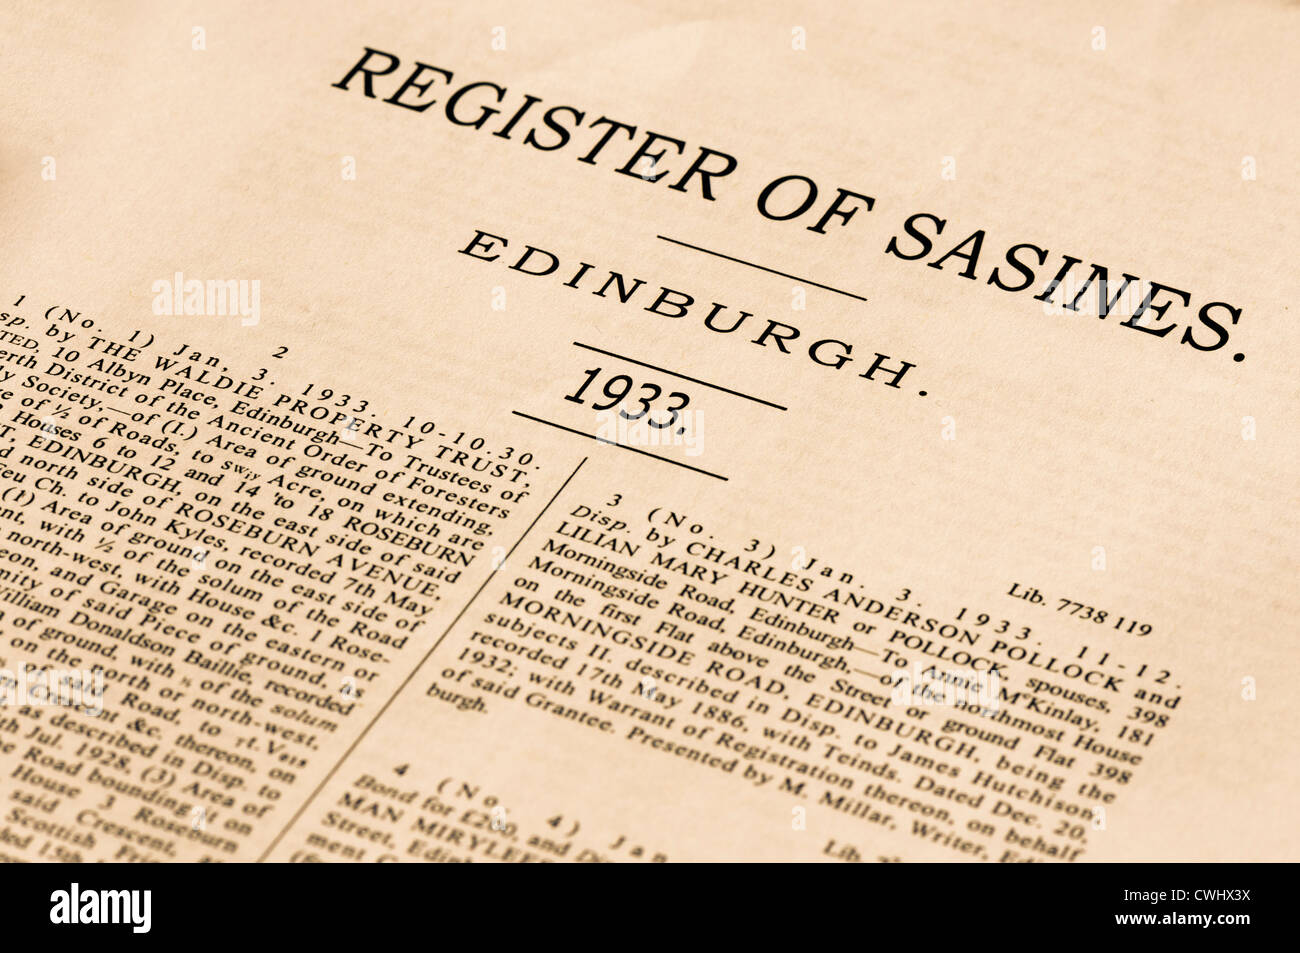 Registro de la propiedad (vivienda y Sasines ventas) para Edimburgo, 1933. Foto de stock